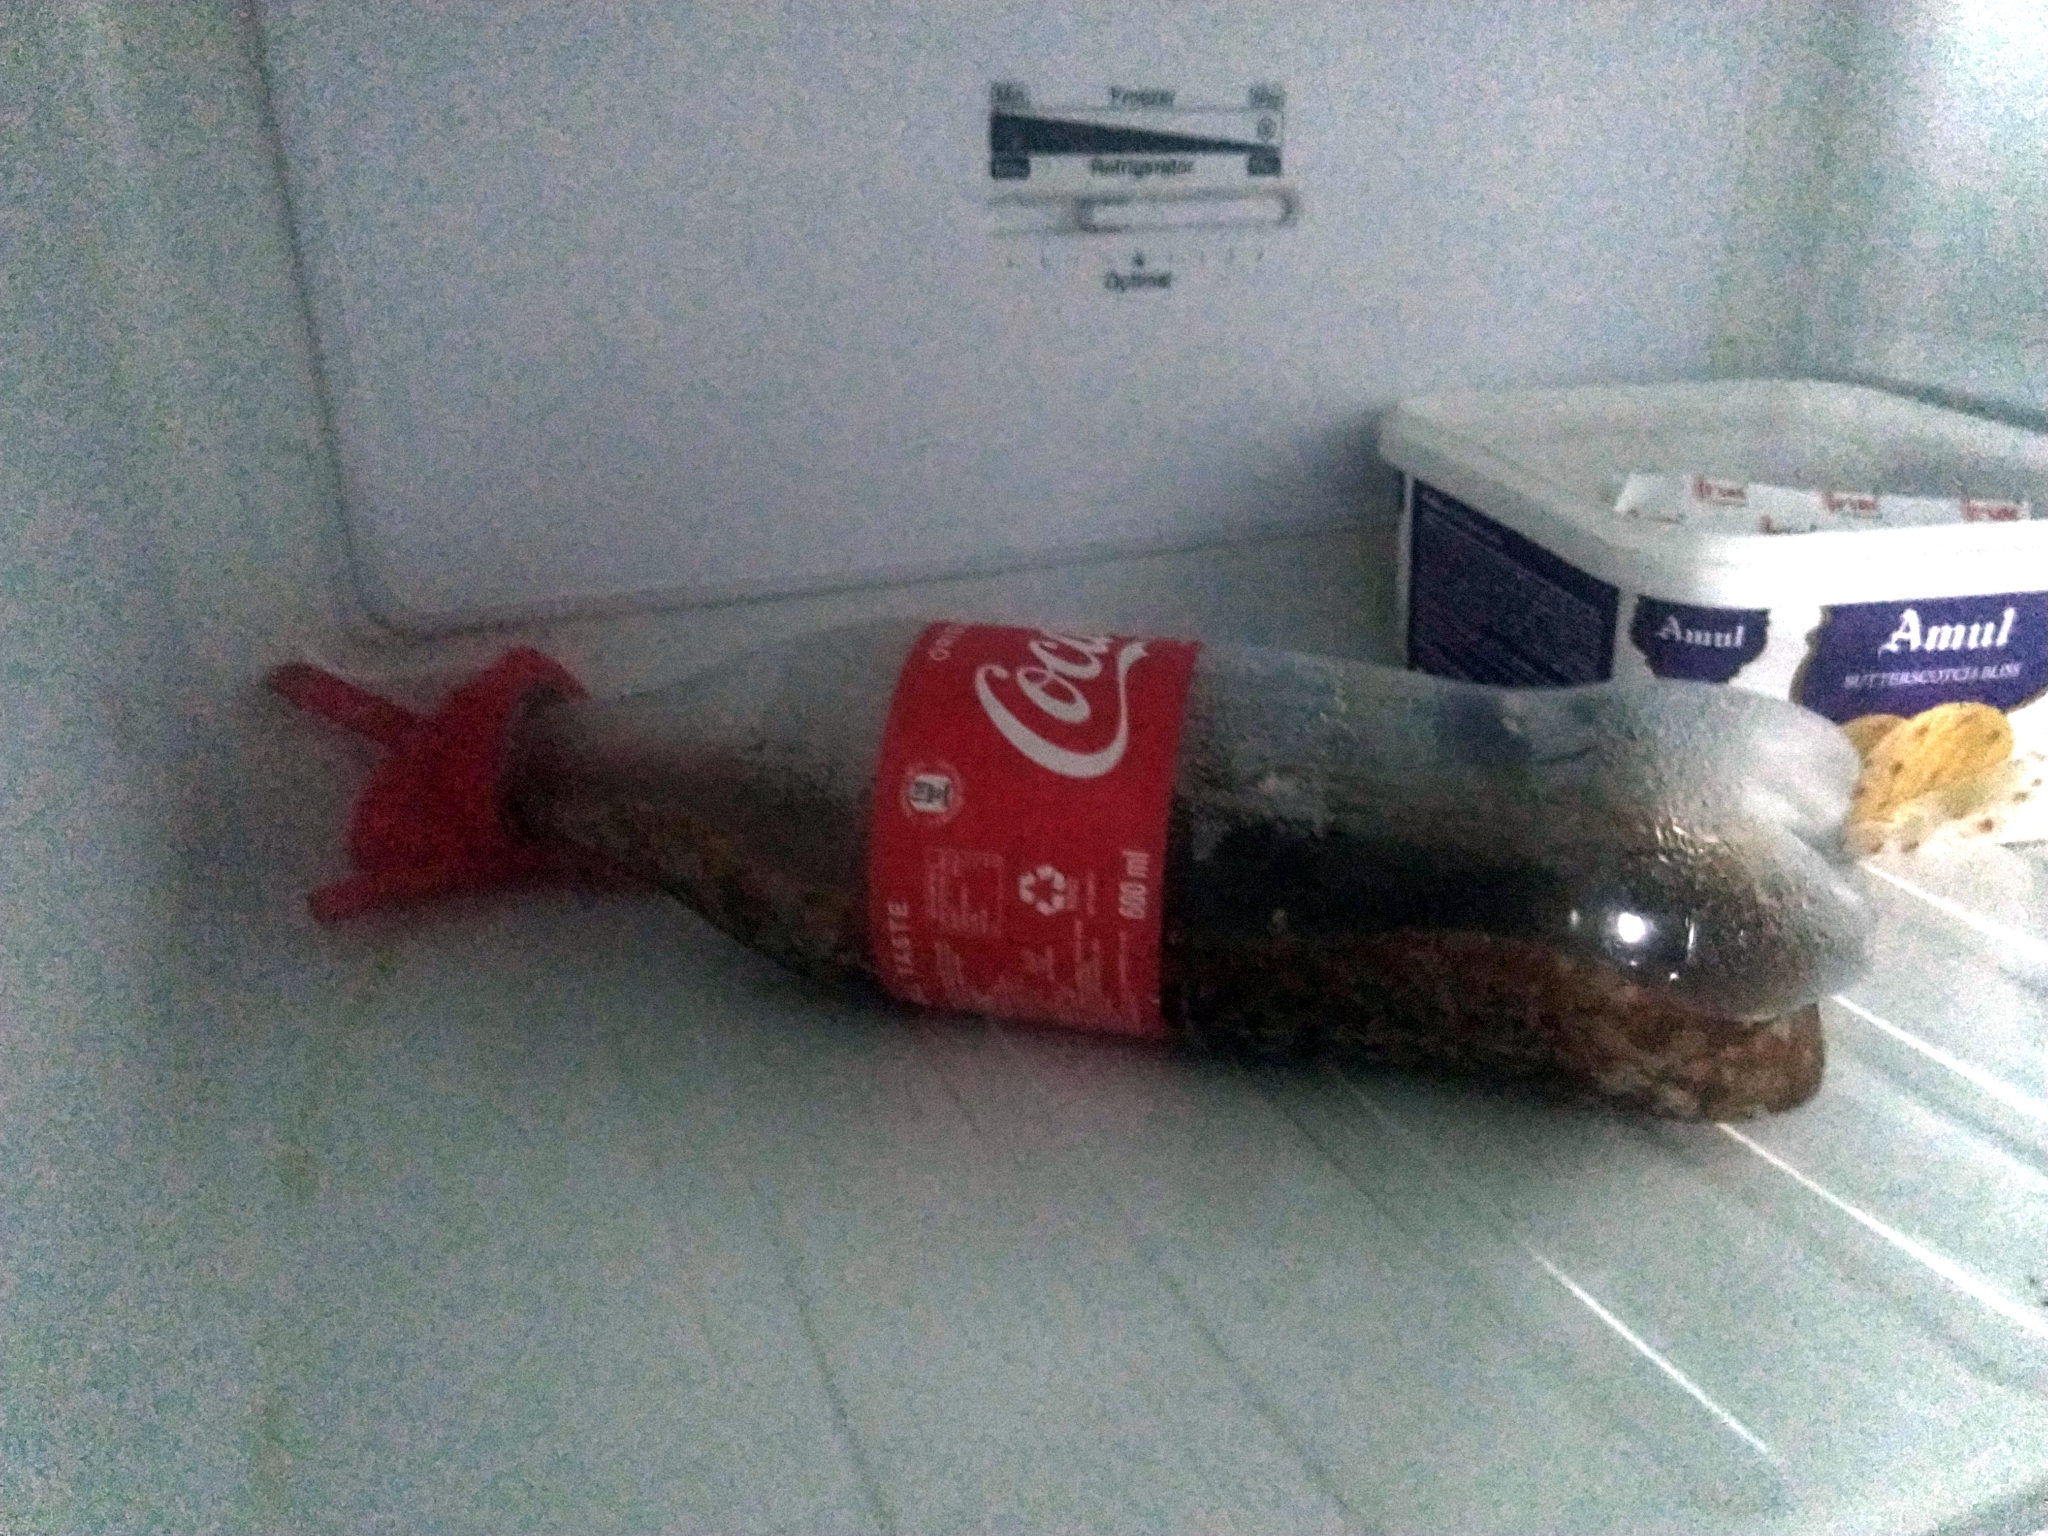 Frozen coke